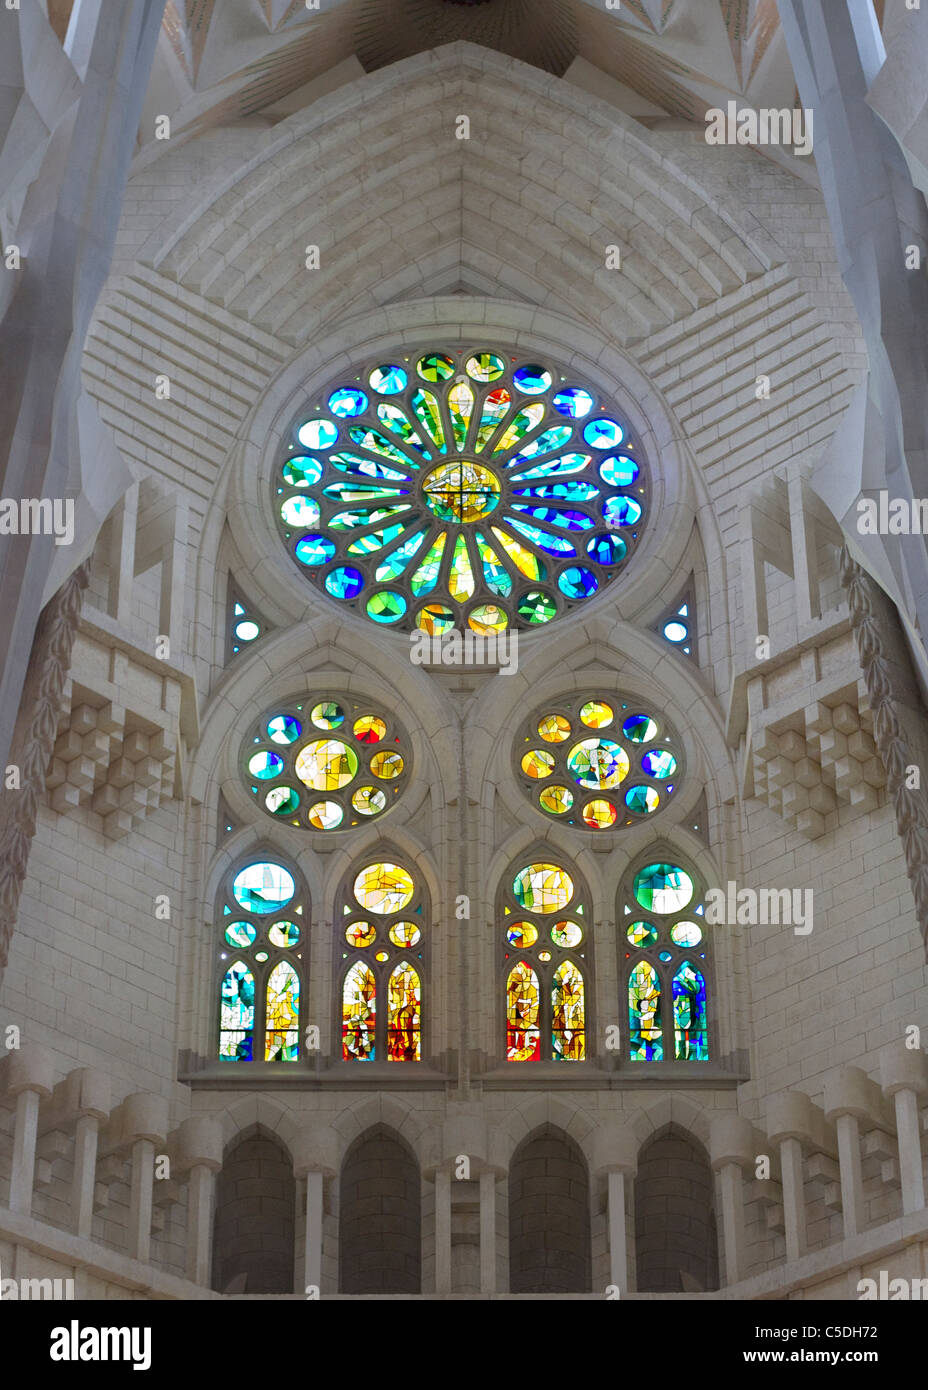 A stain glass window in the interior of Antoni Gaudi's Sagrada Familia Stock Photo